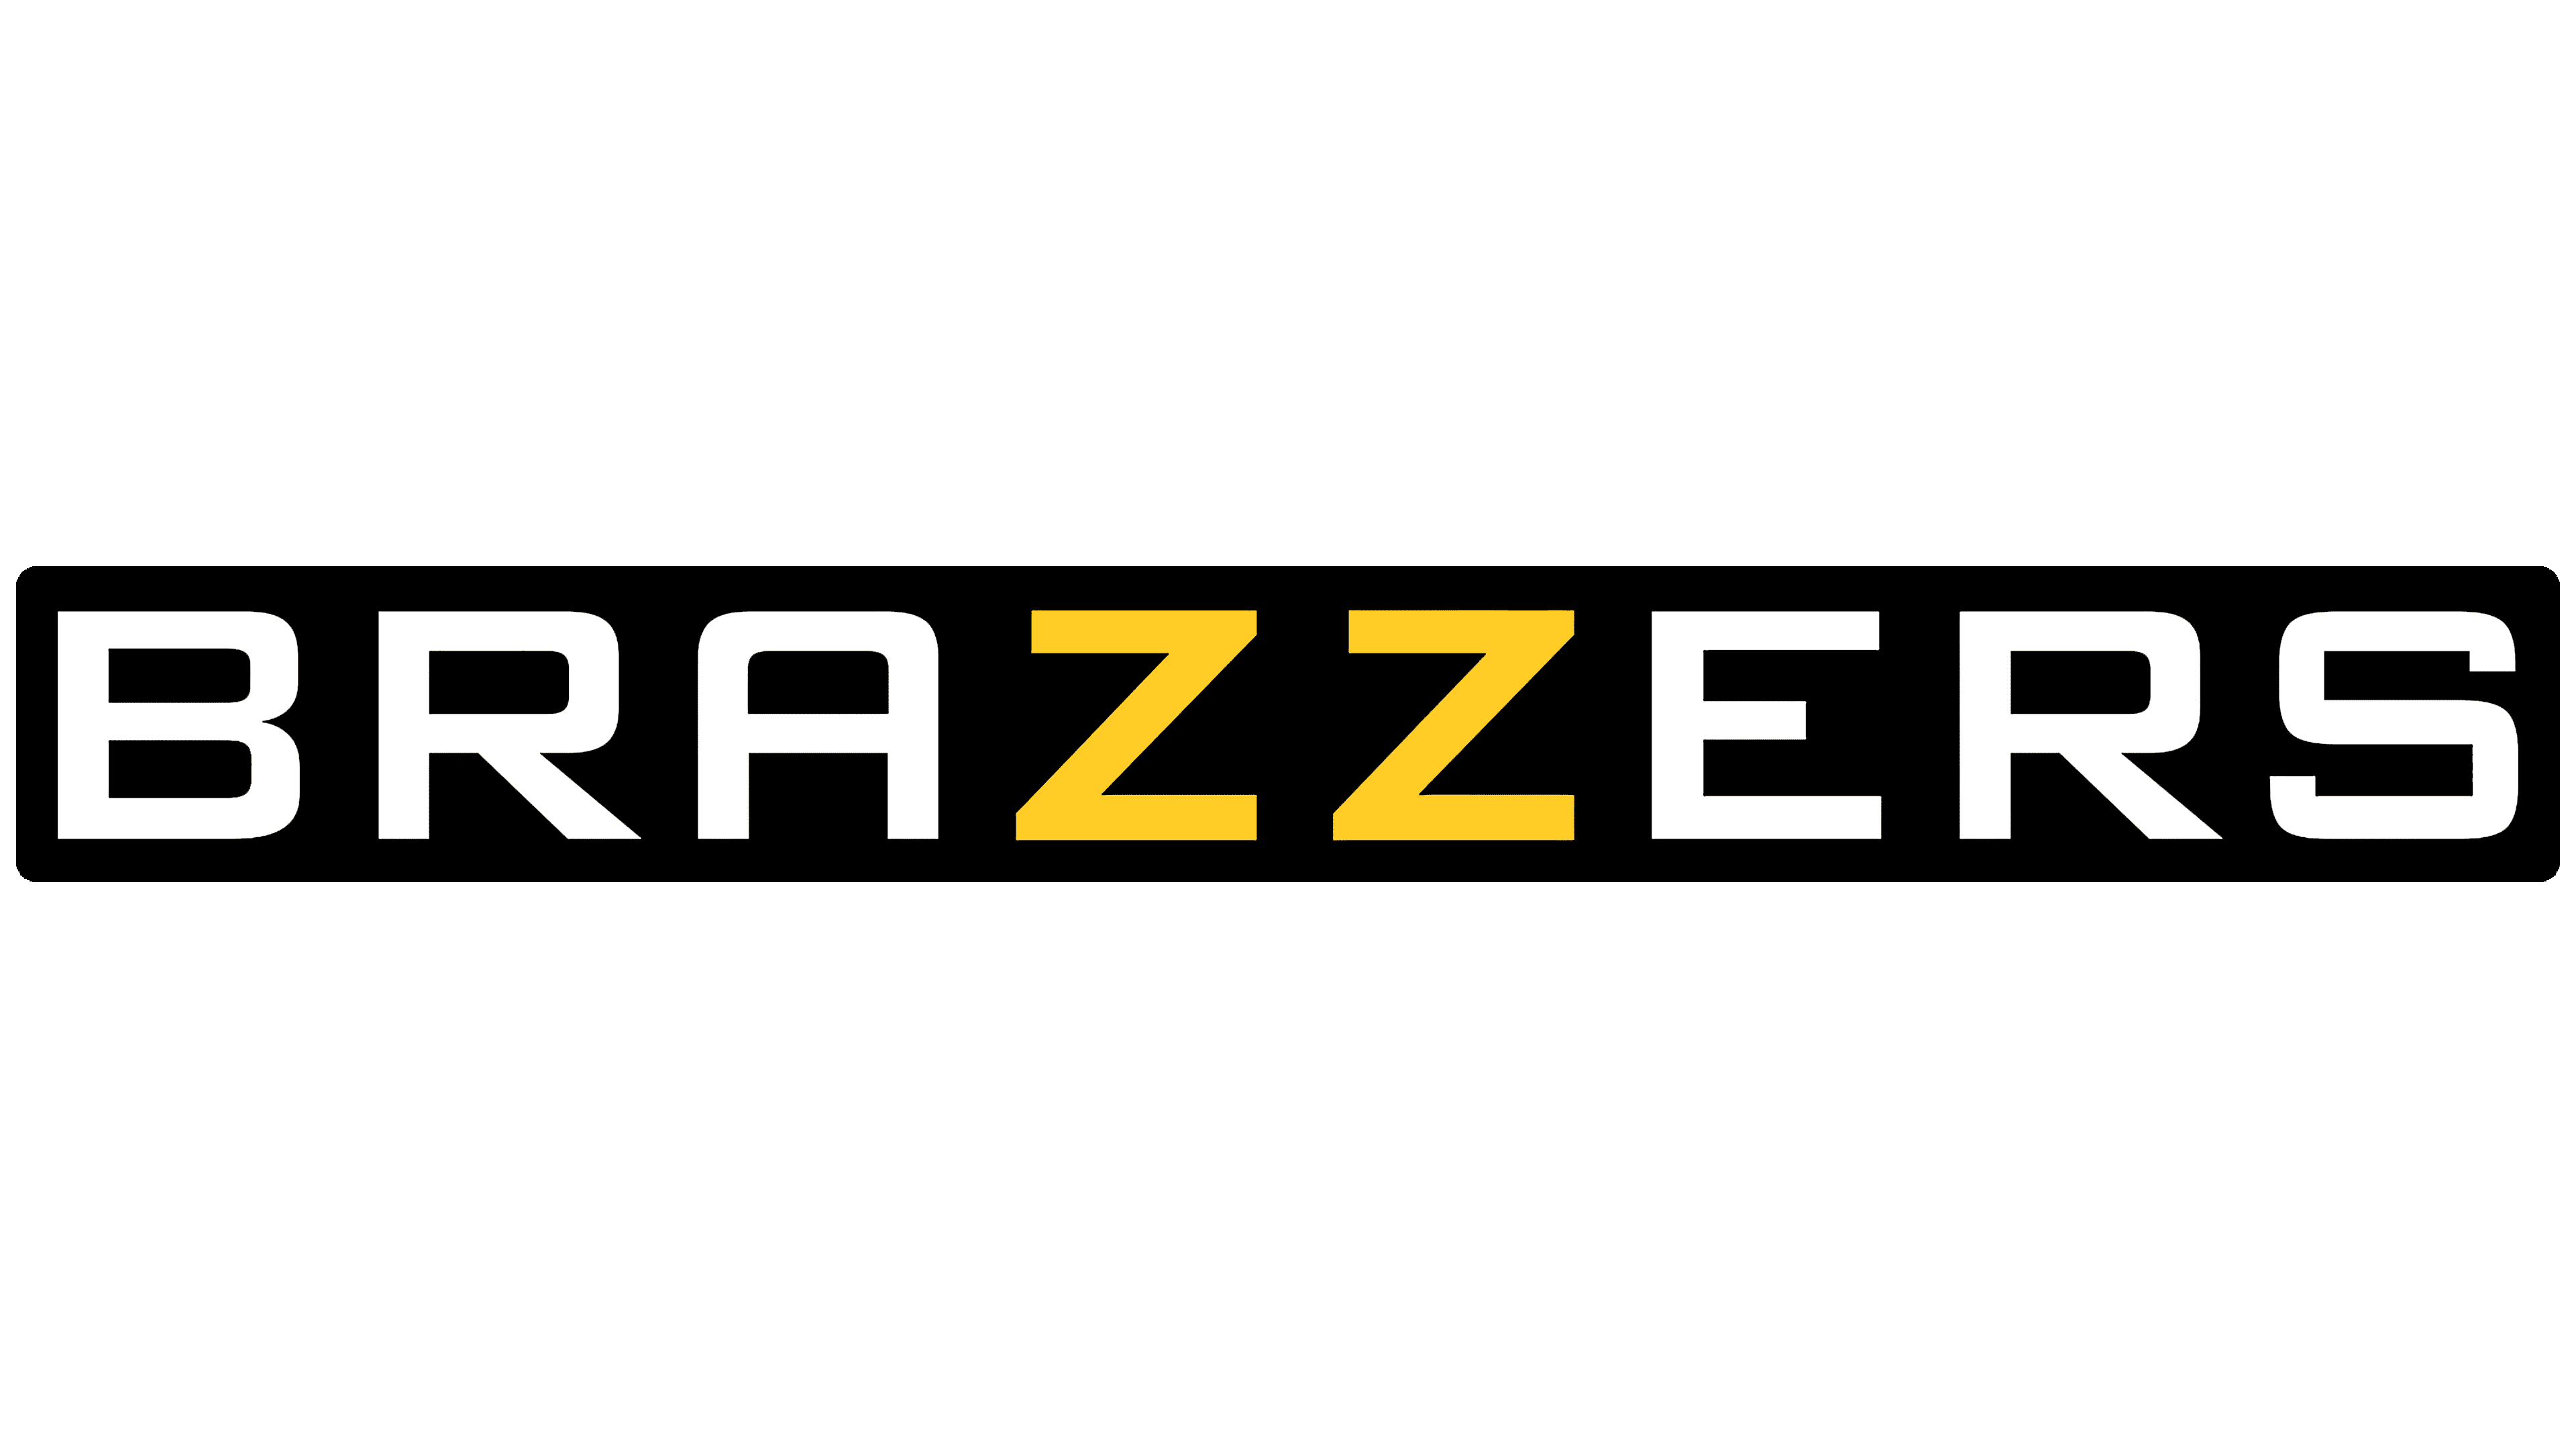 Brazzers Logo y símbolo, significado, historia, PNG, marca